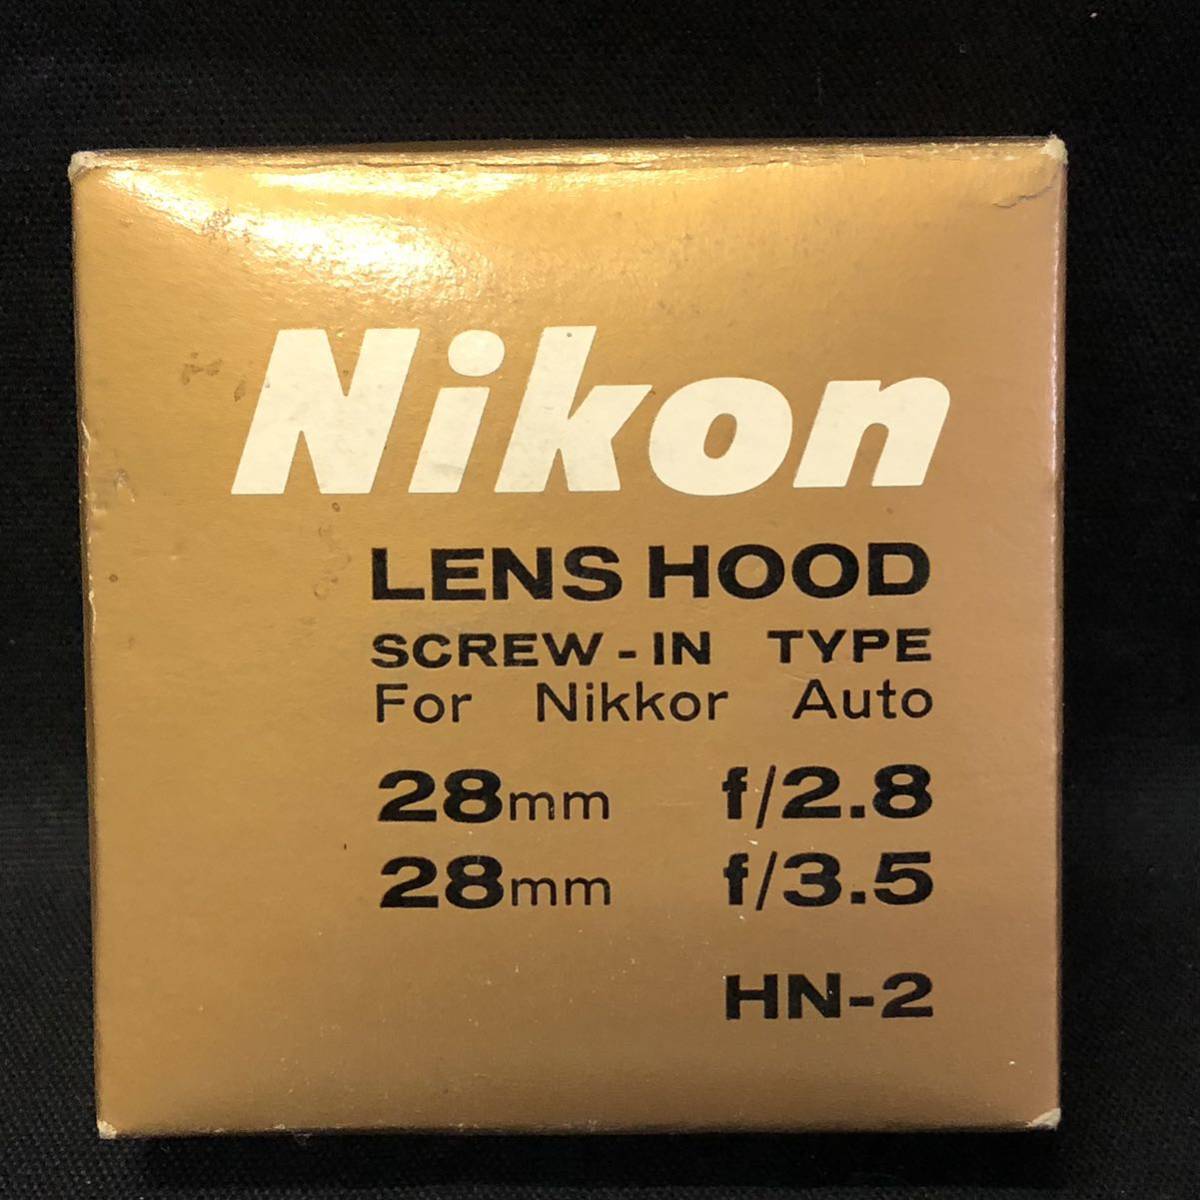 B475 is # Nikon Nikon LENS HOOD SCREW-IN TYPE 28mm f/2.8 28mm f/3.5 lens hood 